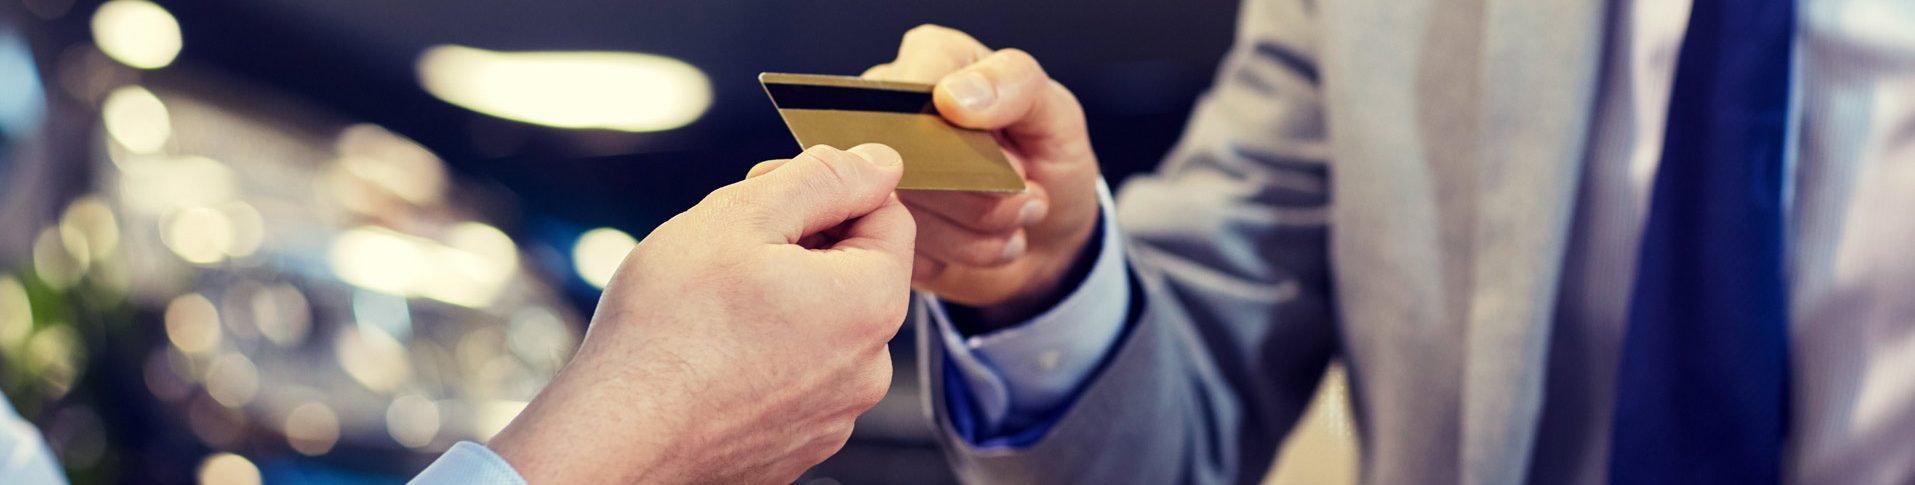 Une main tend une carte de crédit à un vendeur